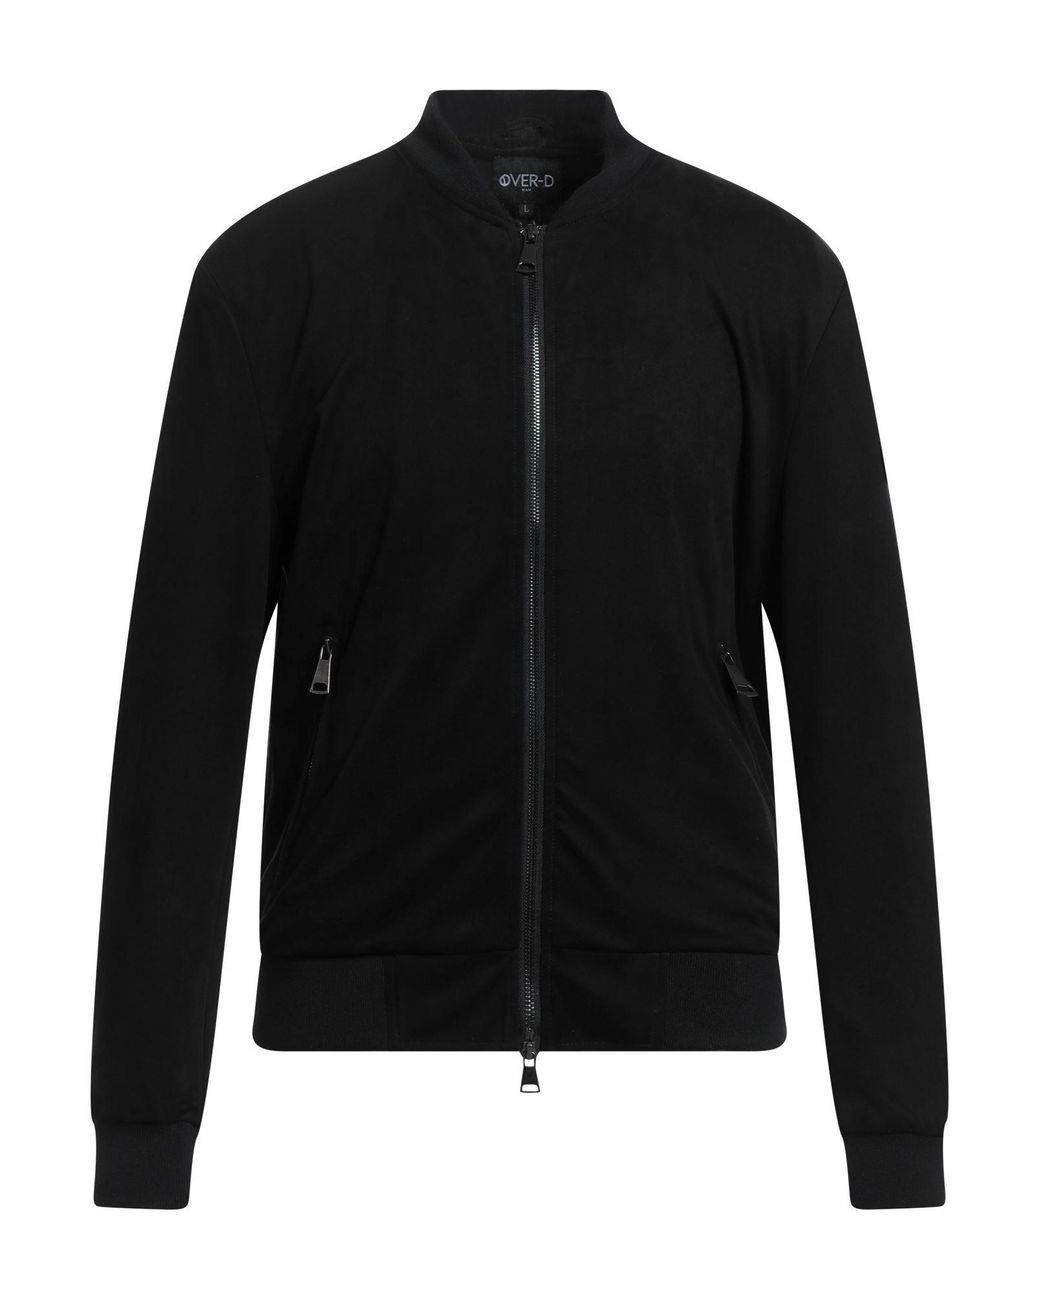 OVER-D Jacket in Black for Men | Lyst